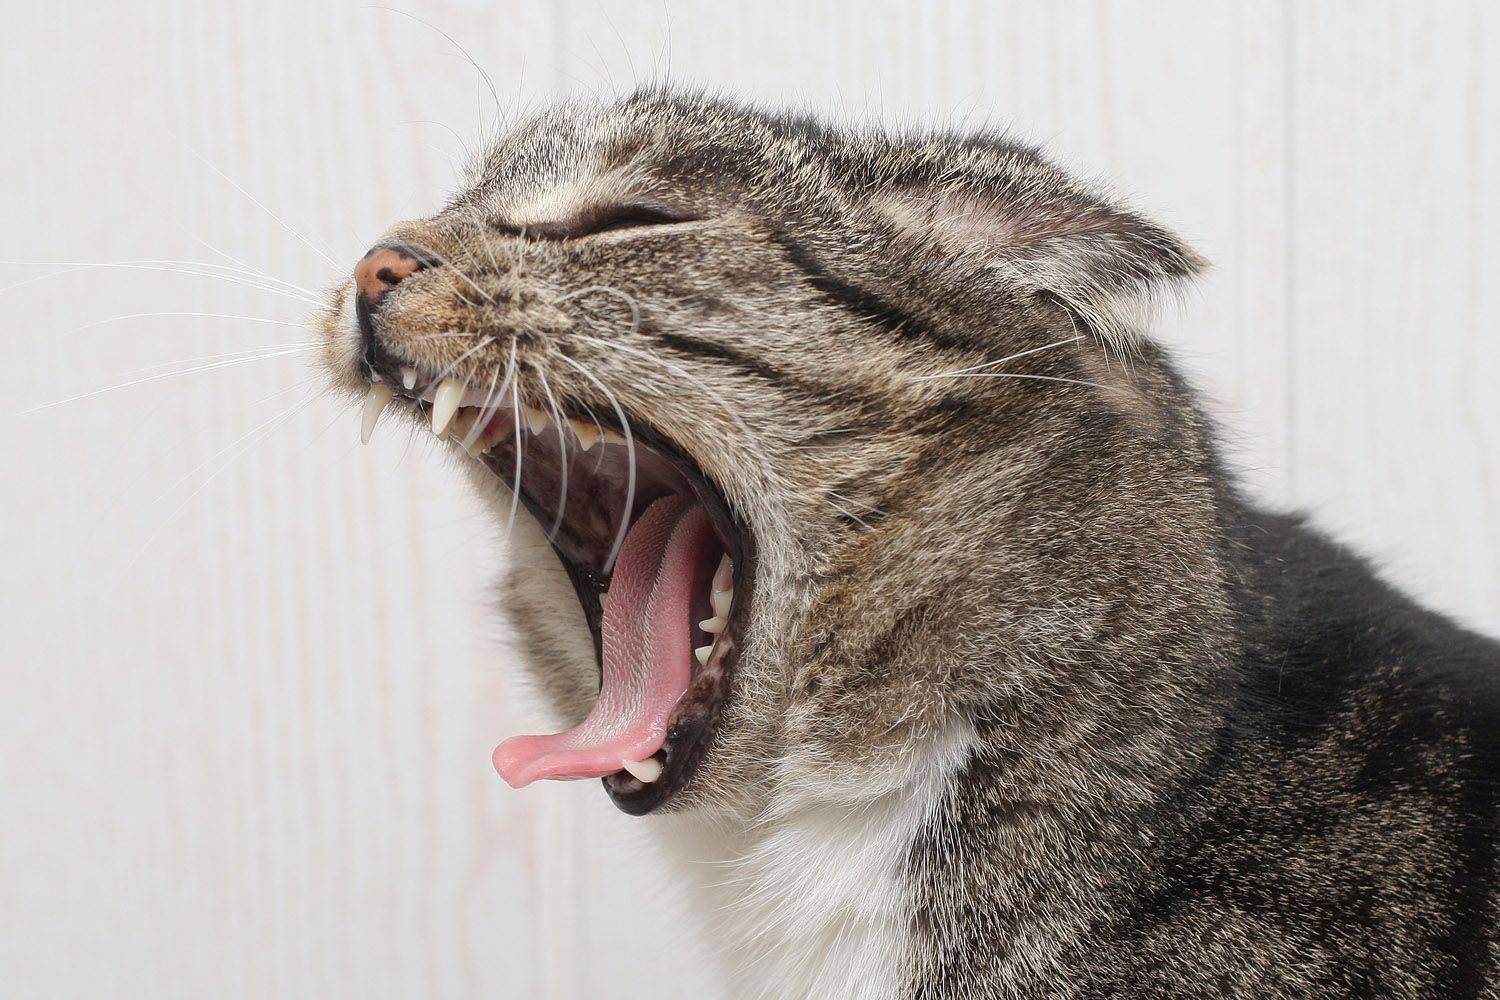 Орущий кот: особенности поведения или признак болезни?